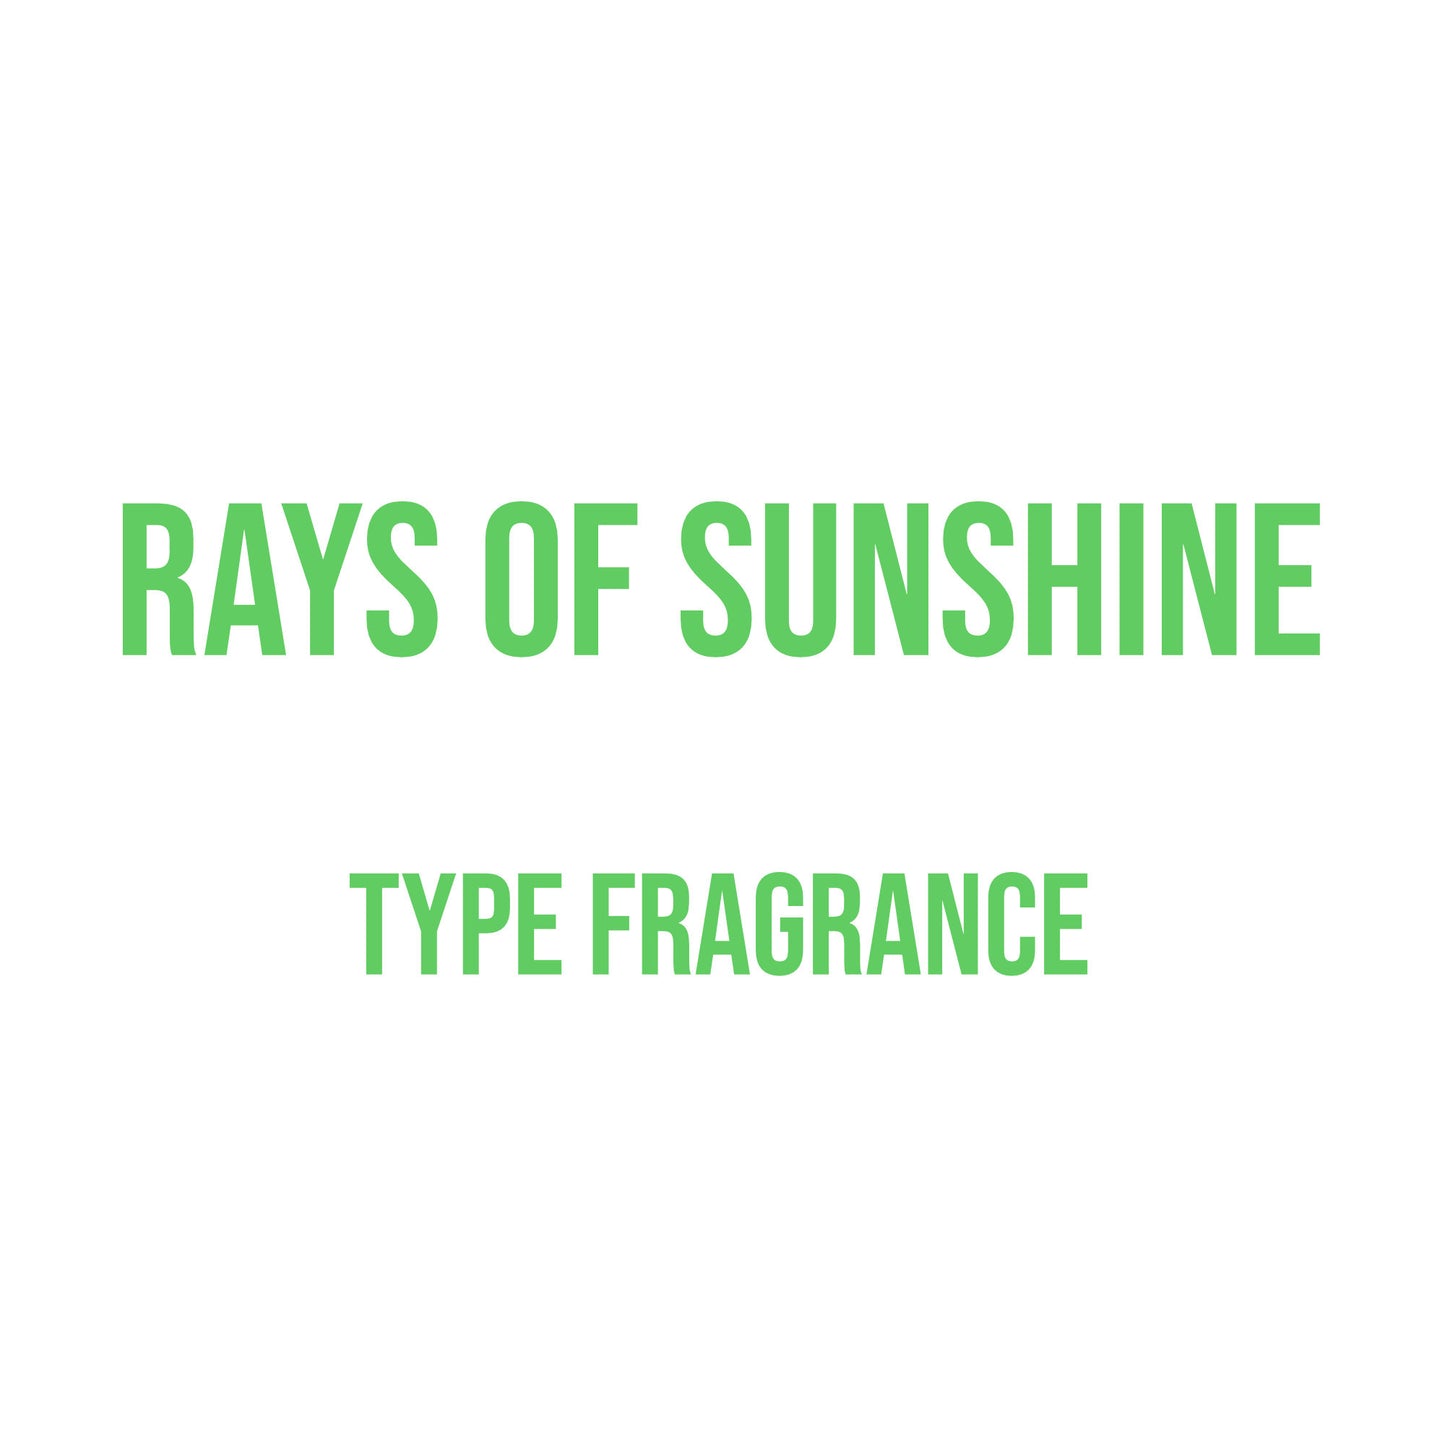 Rays of Sunshine Type Fragrance